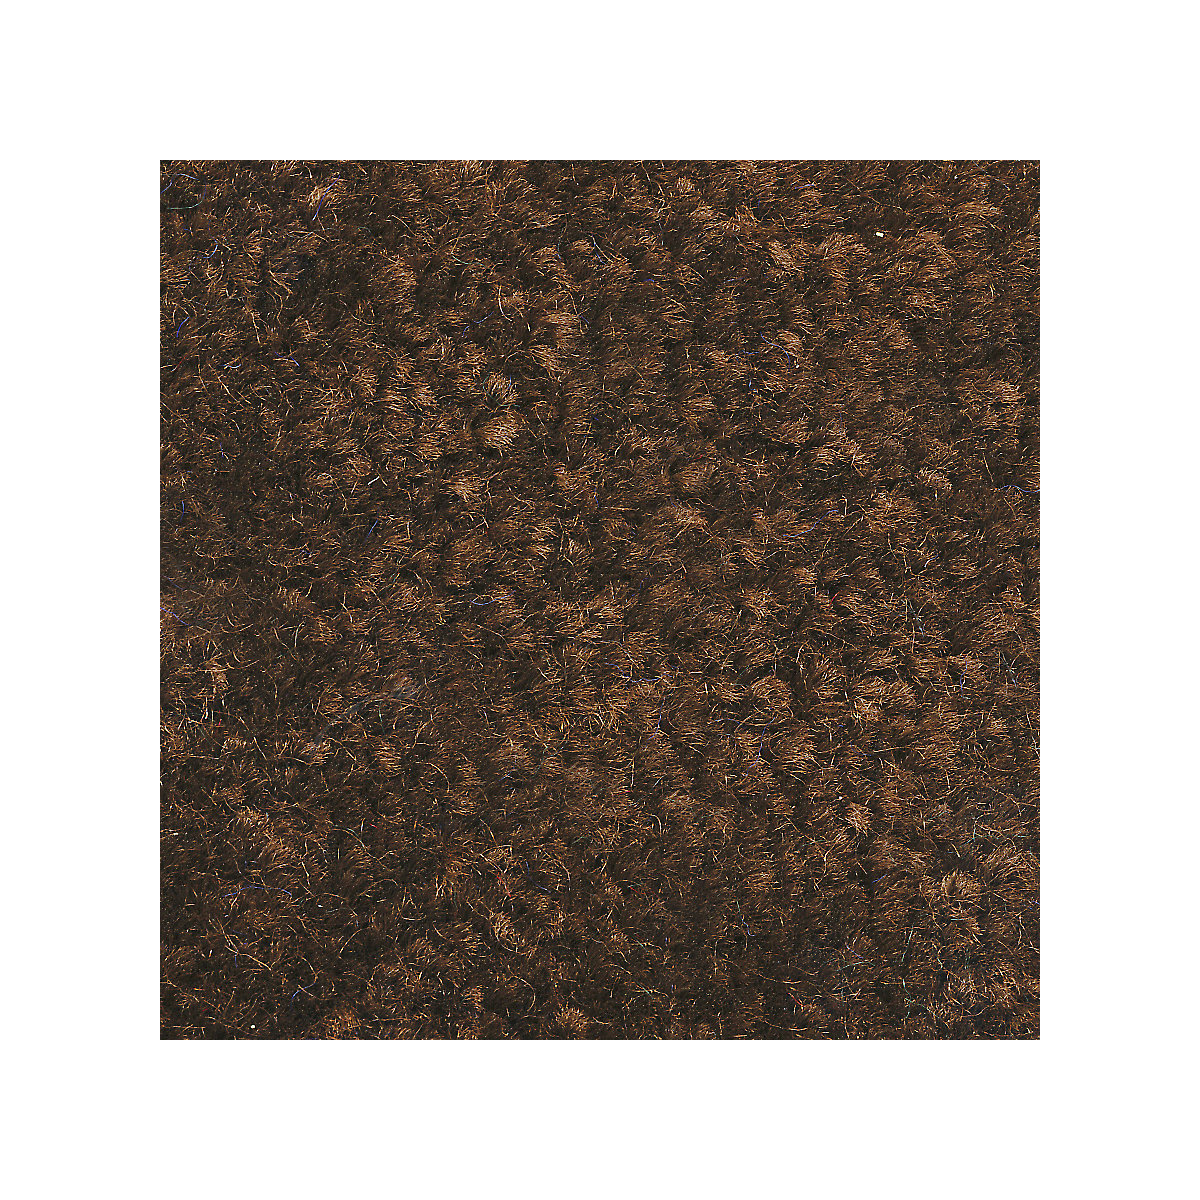 Mata wychwytująca brud do stosowania wewnątrz, runo z polipropylenu, dł. x szer. 1800 x 1200 mm, brązowy